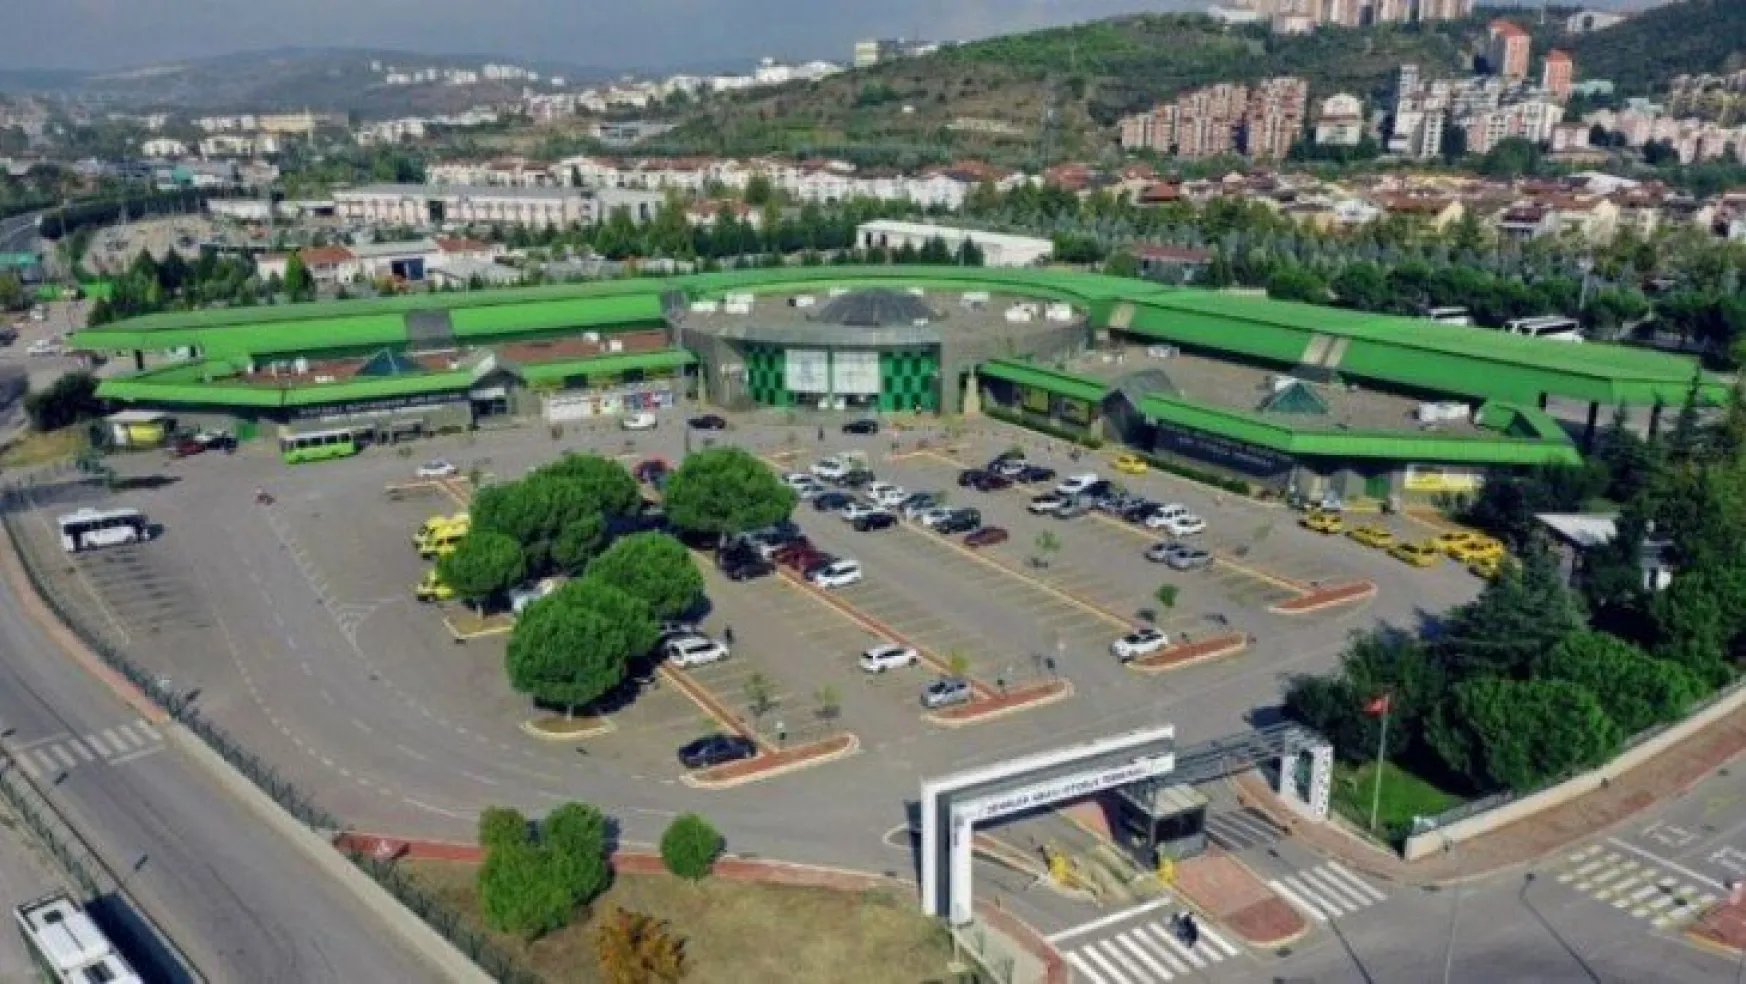 Kocaeli terminali 1 yılda 1 milyon ziyaretçiyi ağırladı